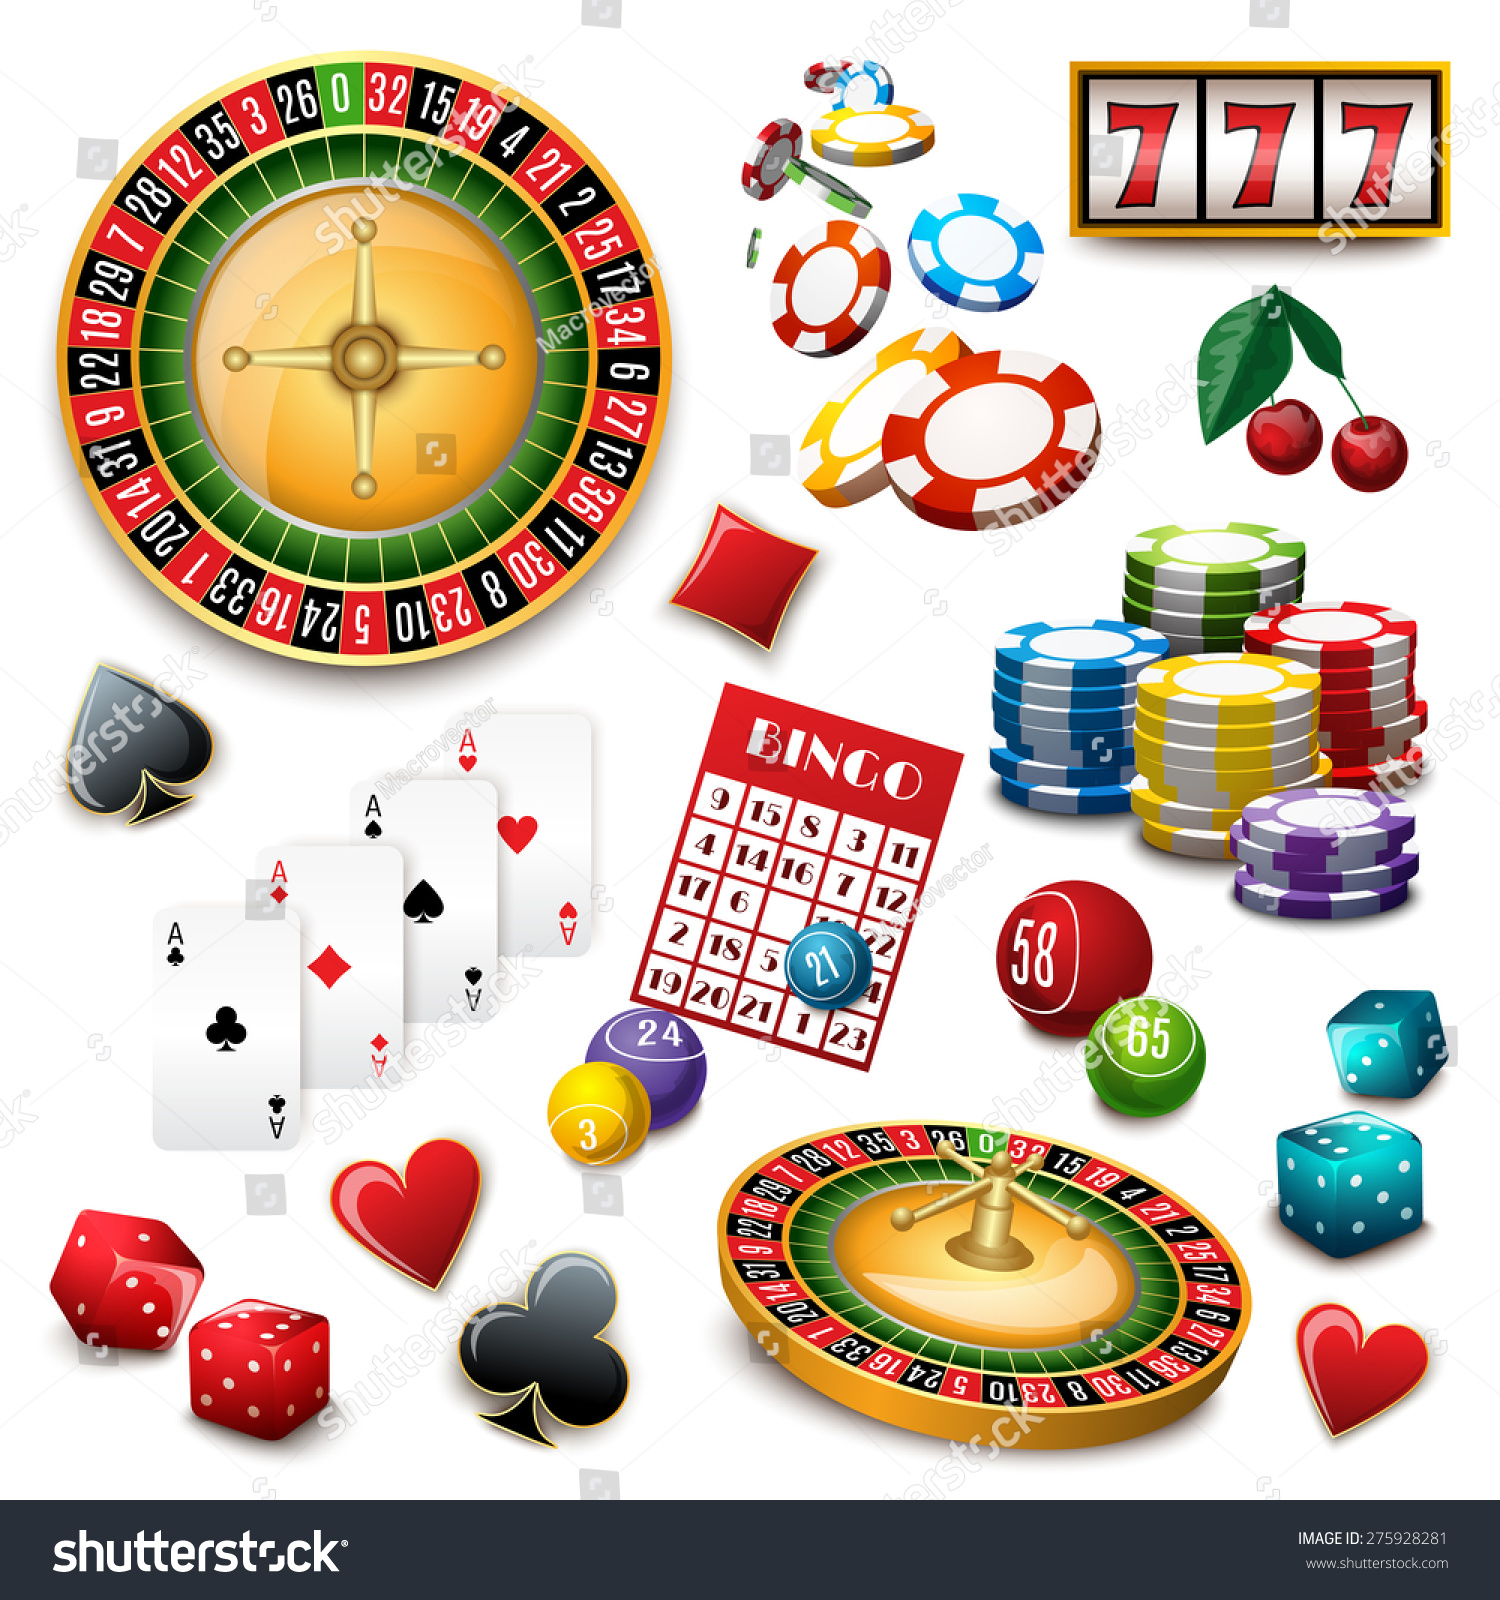 Popular gambling games in vegas